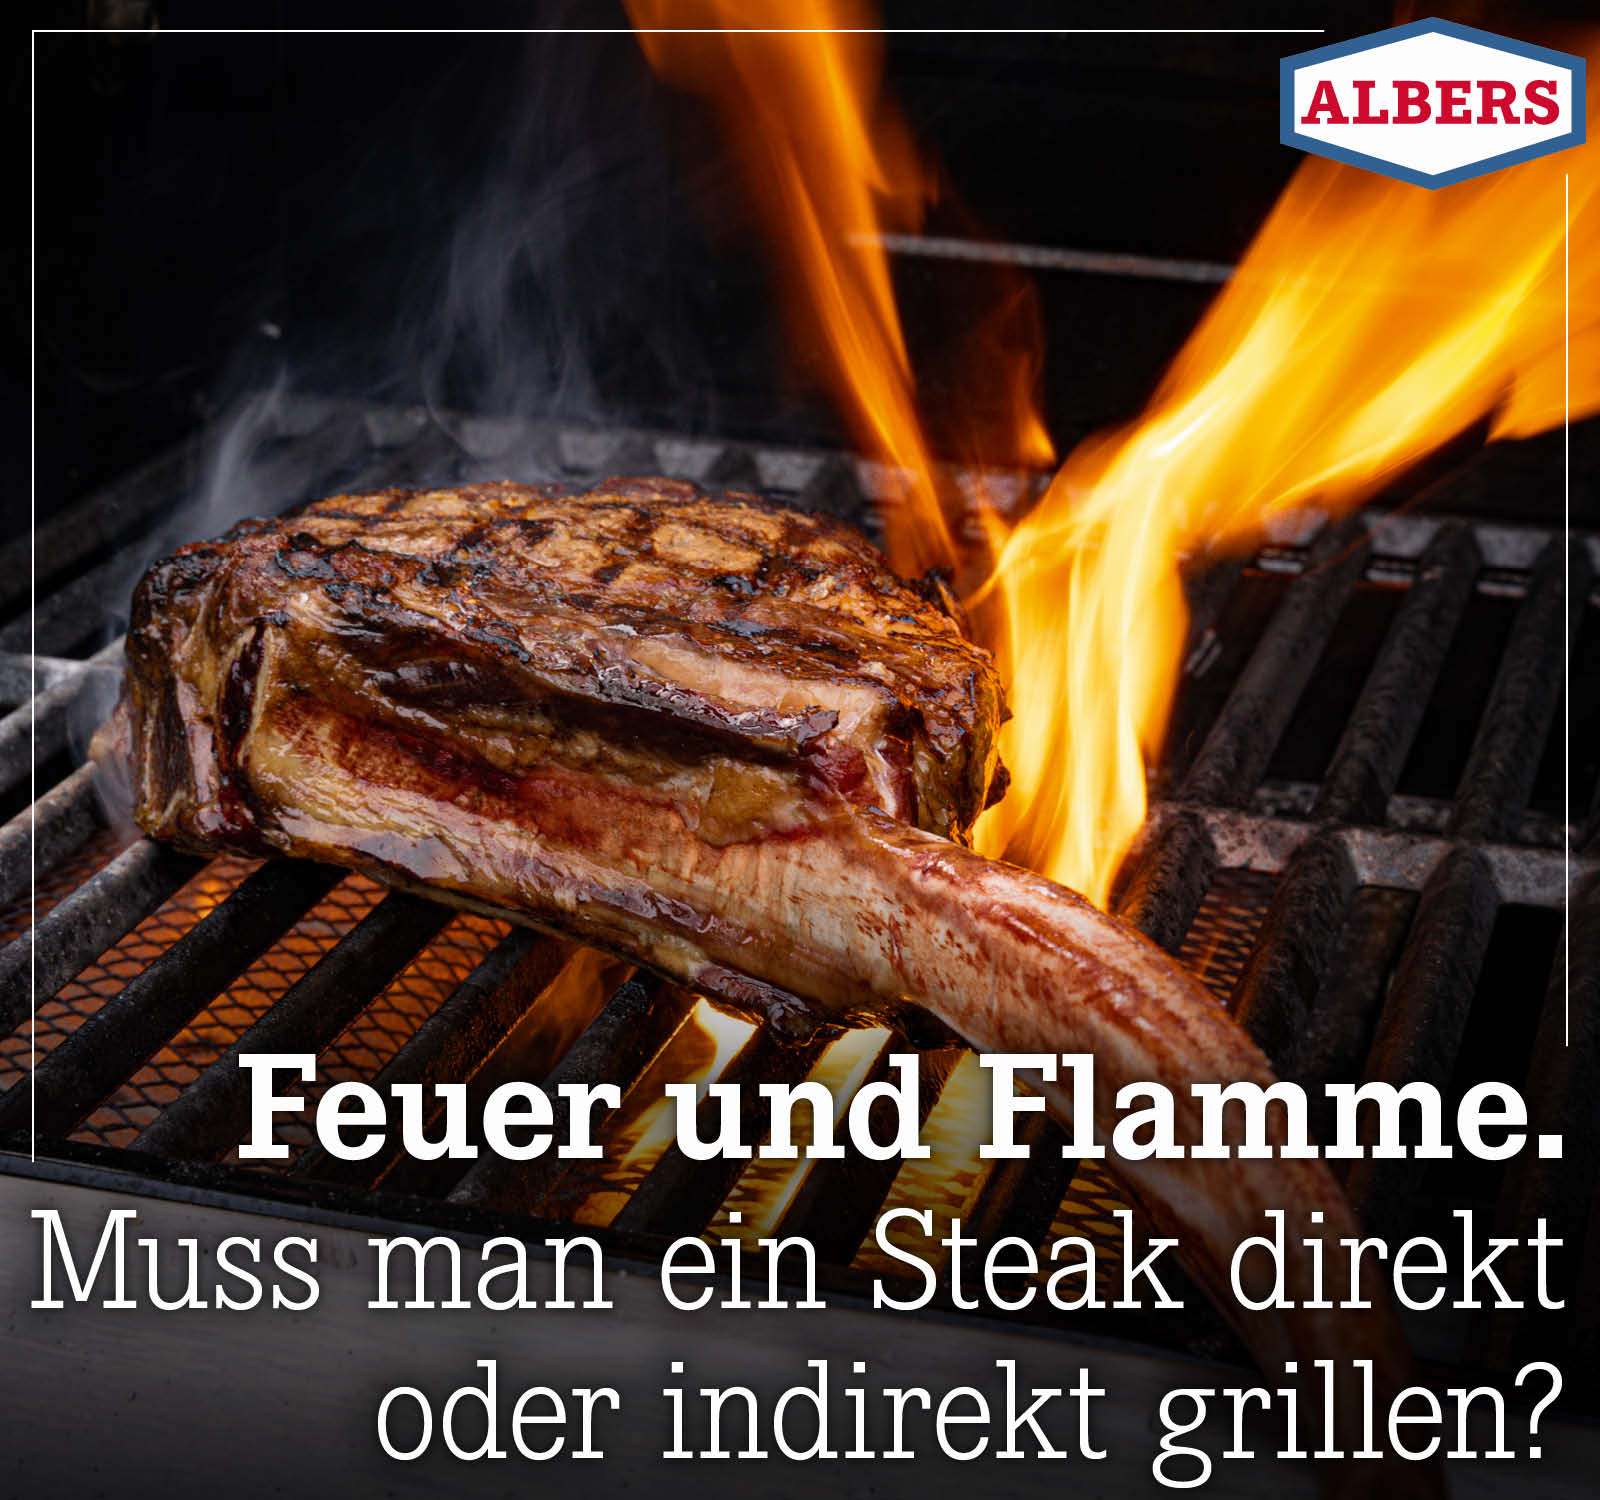 Feuer und Flamme. Muss man ein Steak direkt oder indirekt grillen?